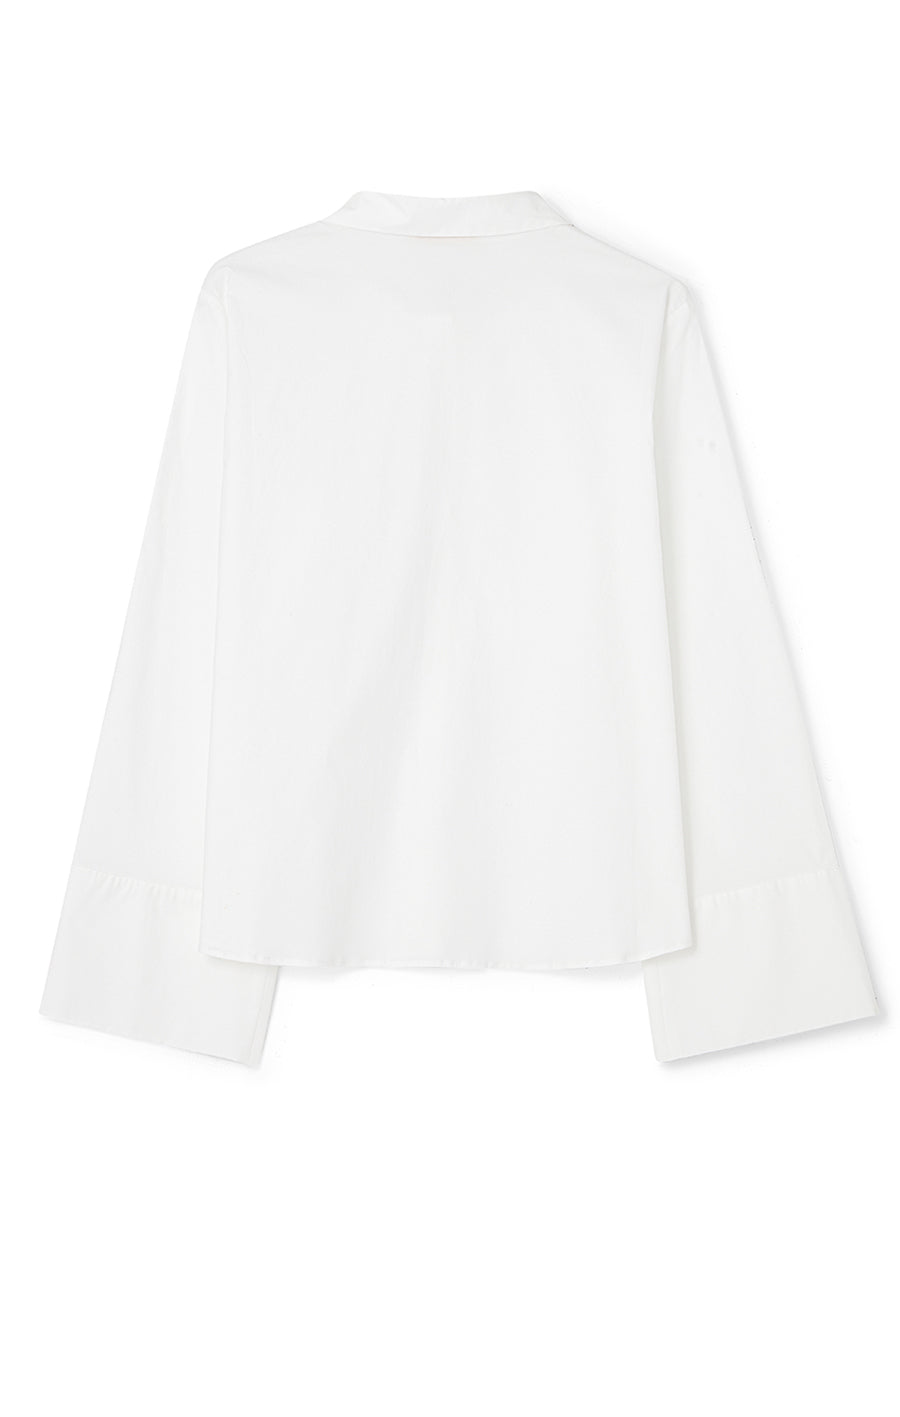 Alva Shirt White